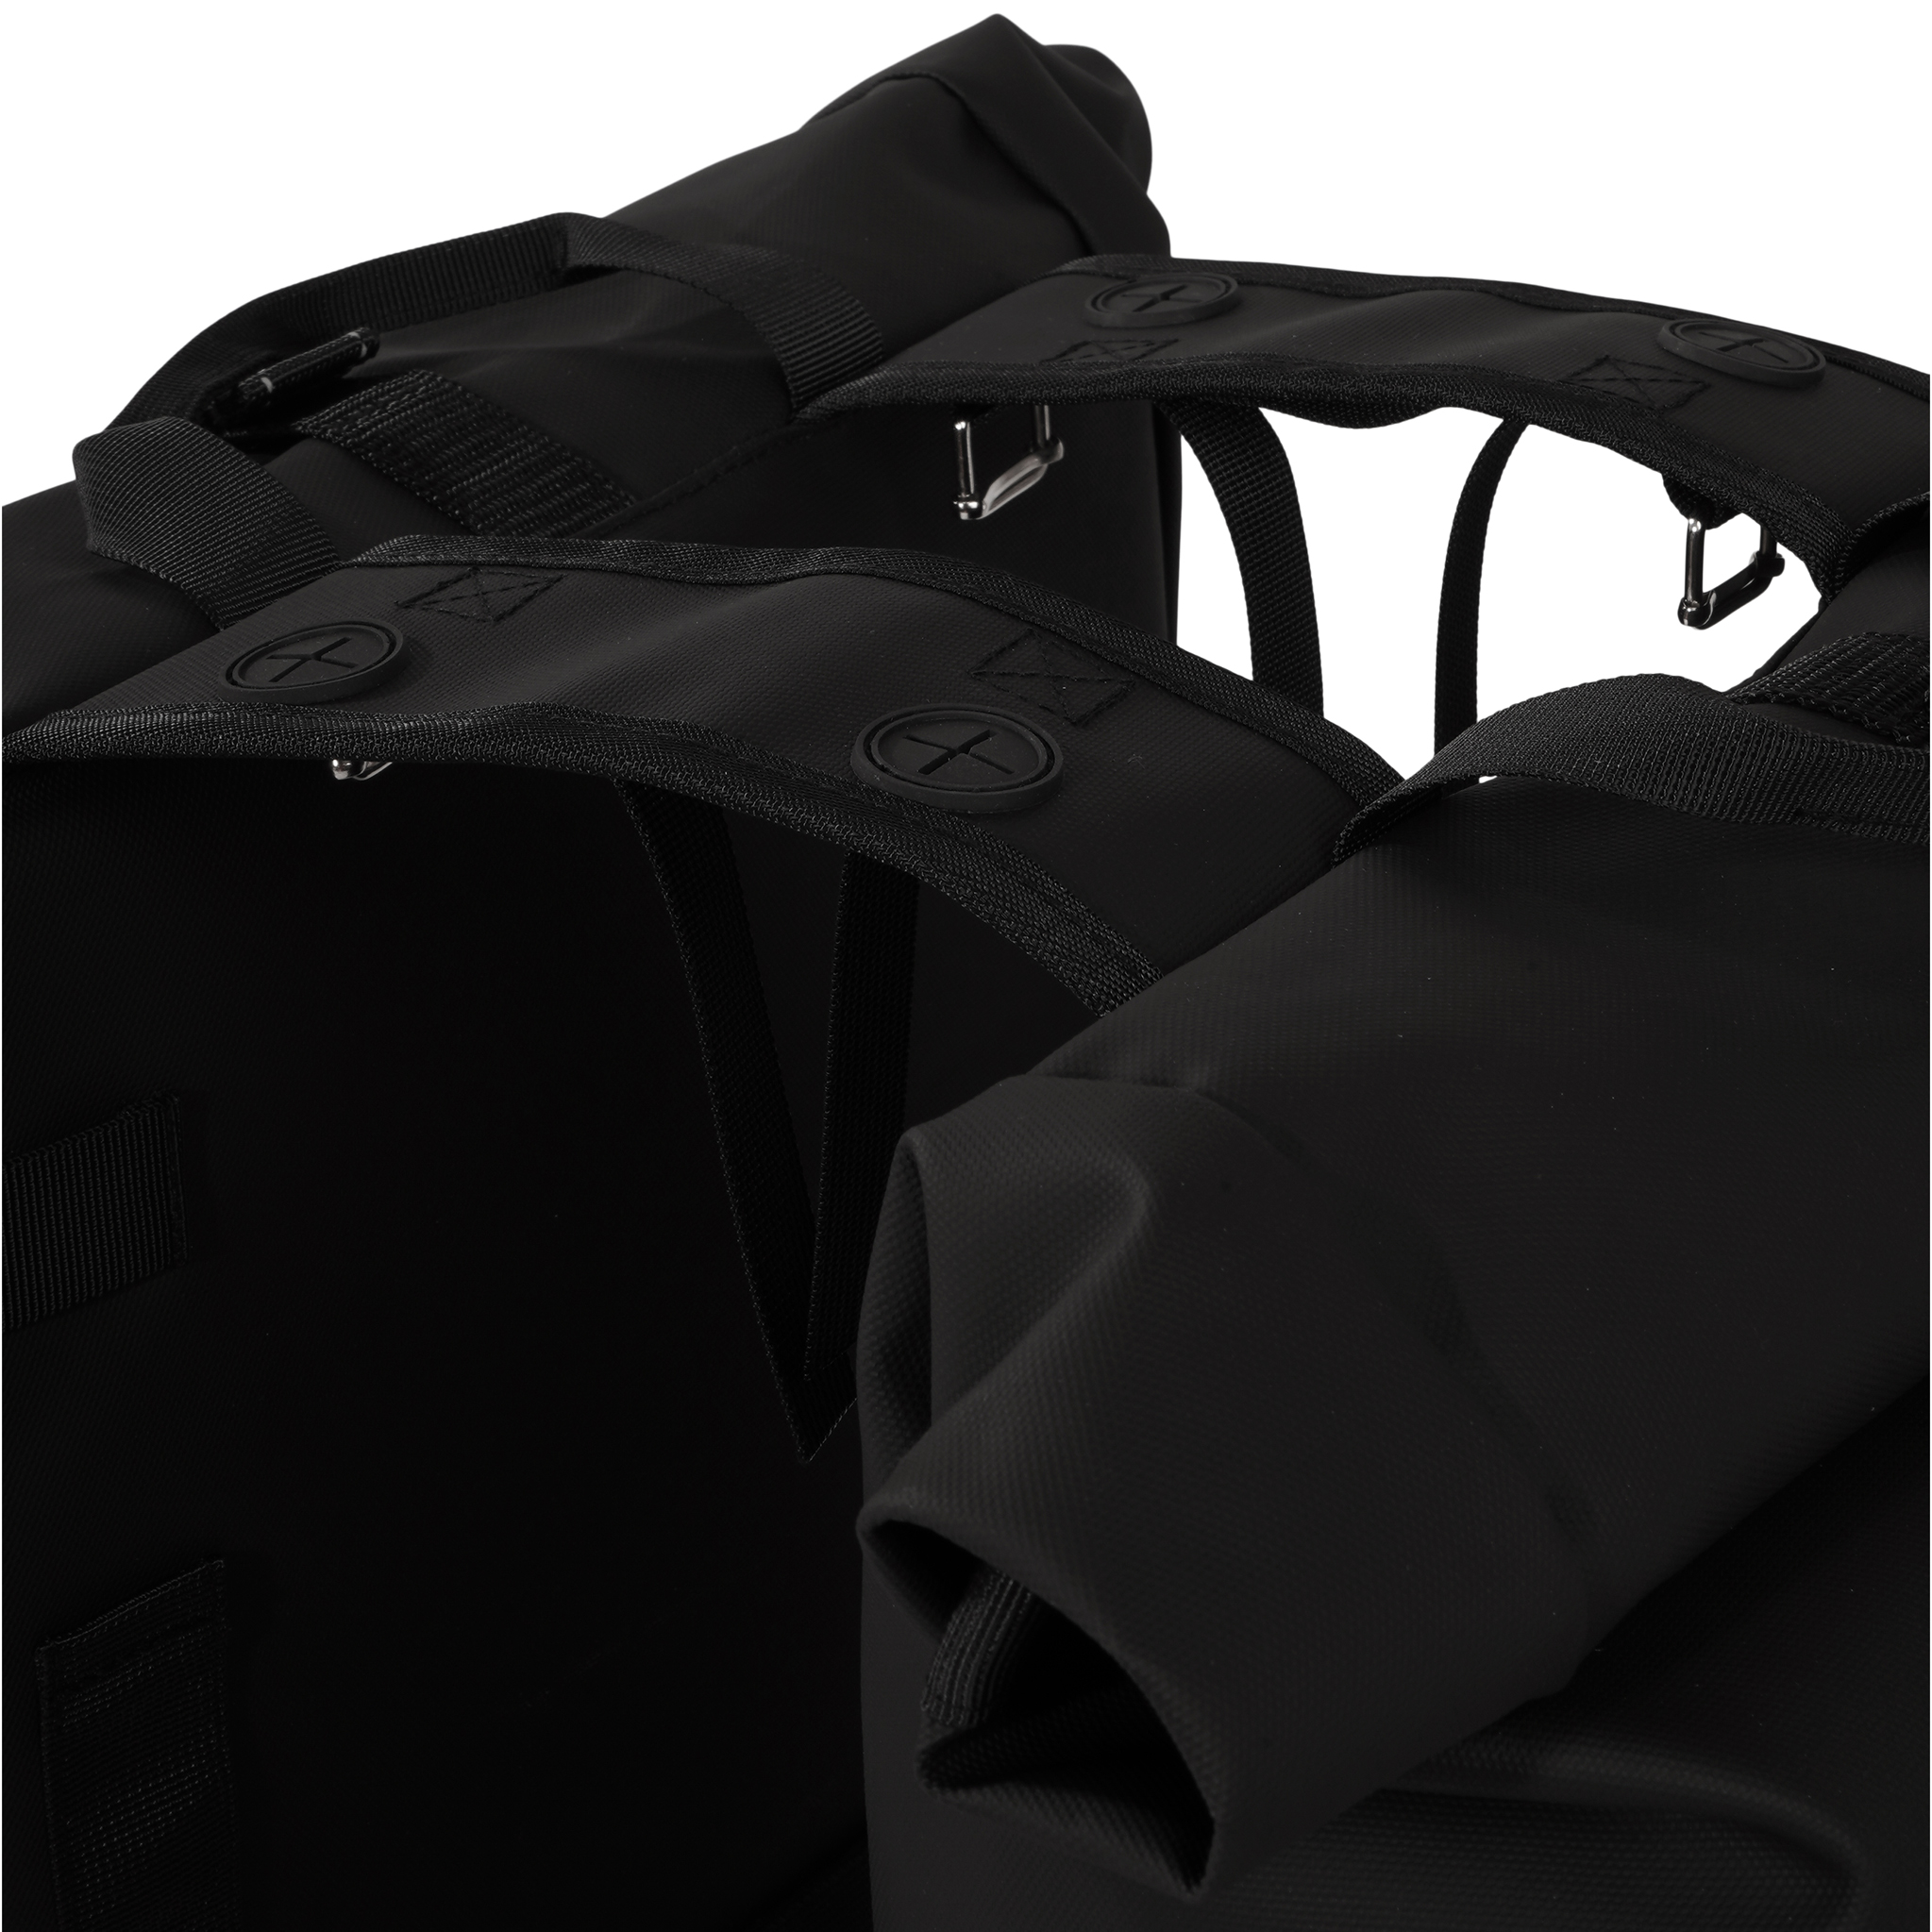 sacoche-double-rolltop-sac-de-velo-urban-proof-bag-black-noir